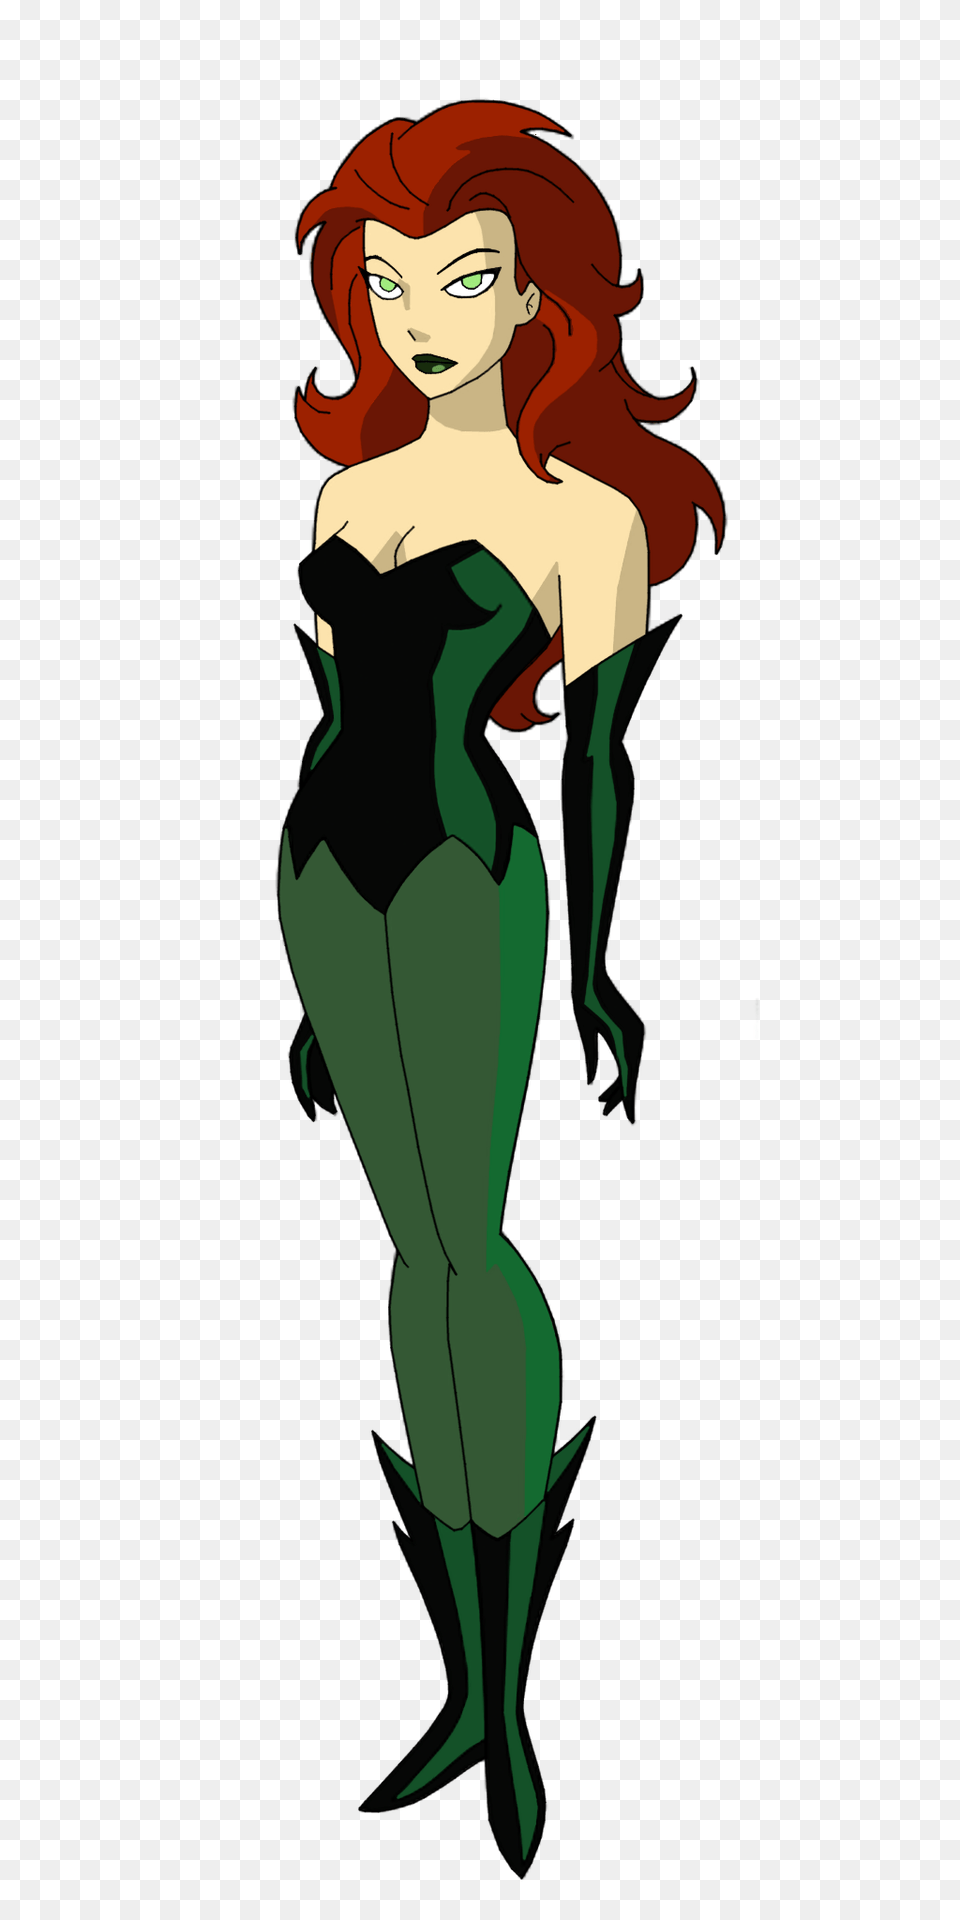 Batman Tas Poison Ivy, Adult, Female, Person, Woman Png